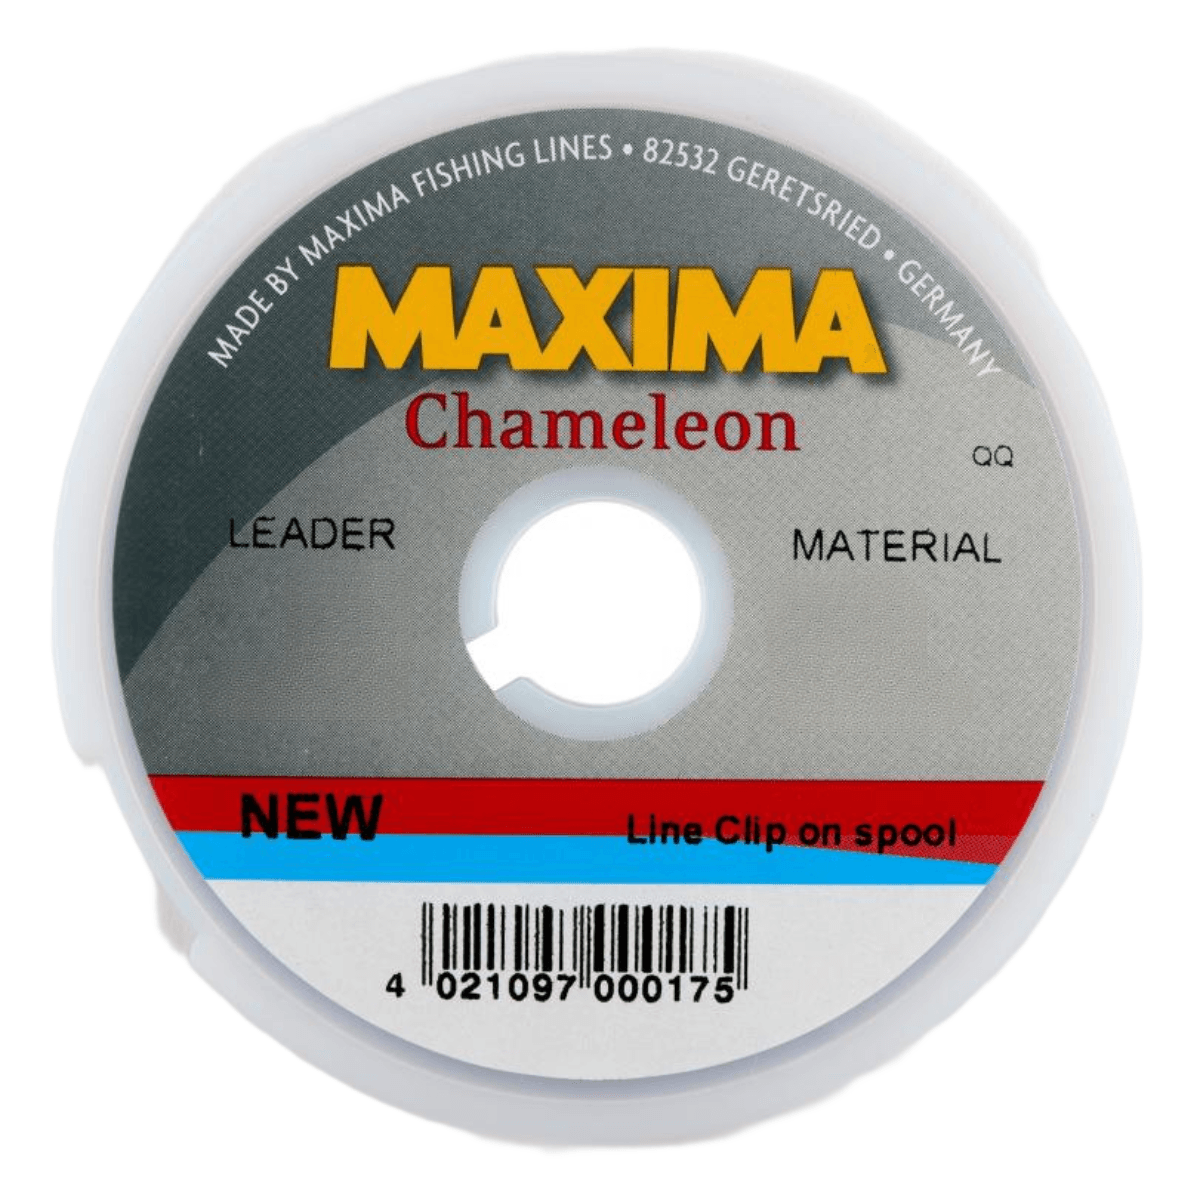 Maxima Chameleon Mono Line